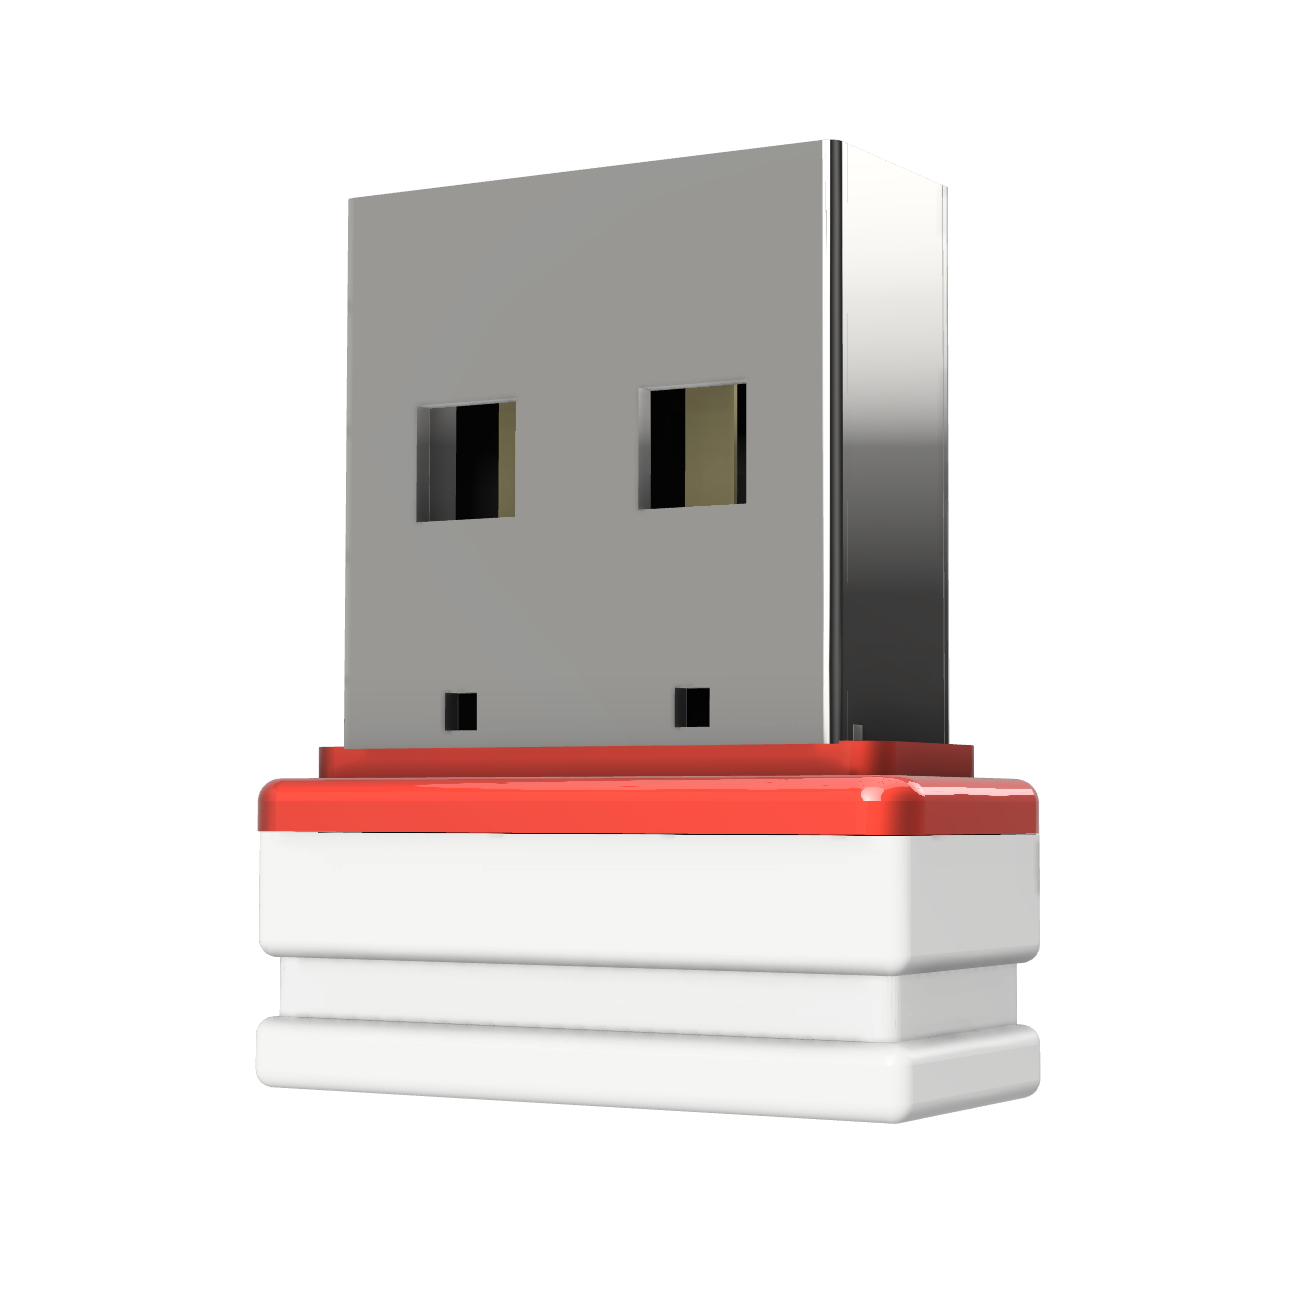 USB-Stick GERMANY ®ULTRA 4 GB) (Weiss/Rot, Mini P1 USB